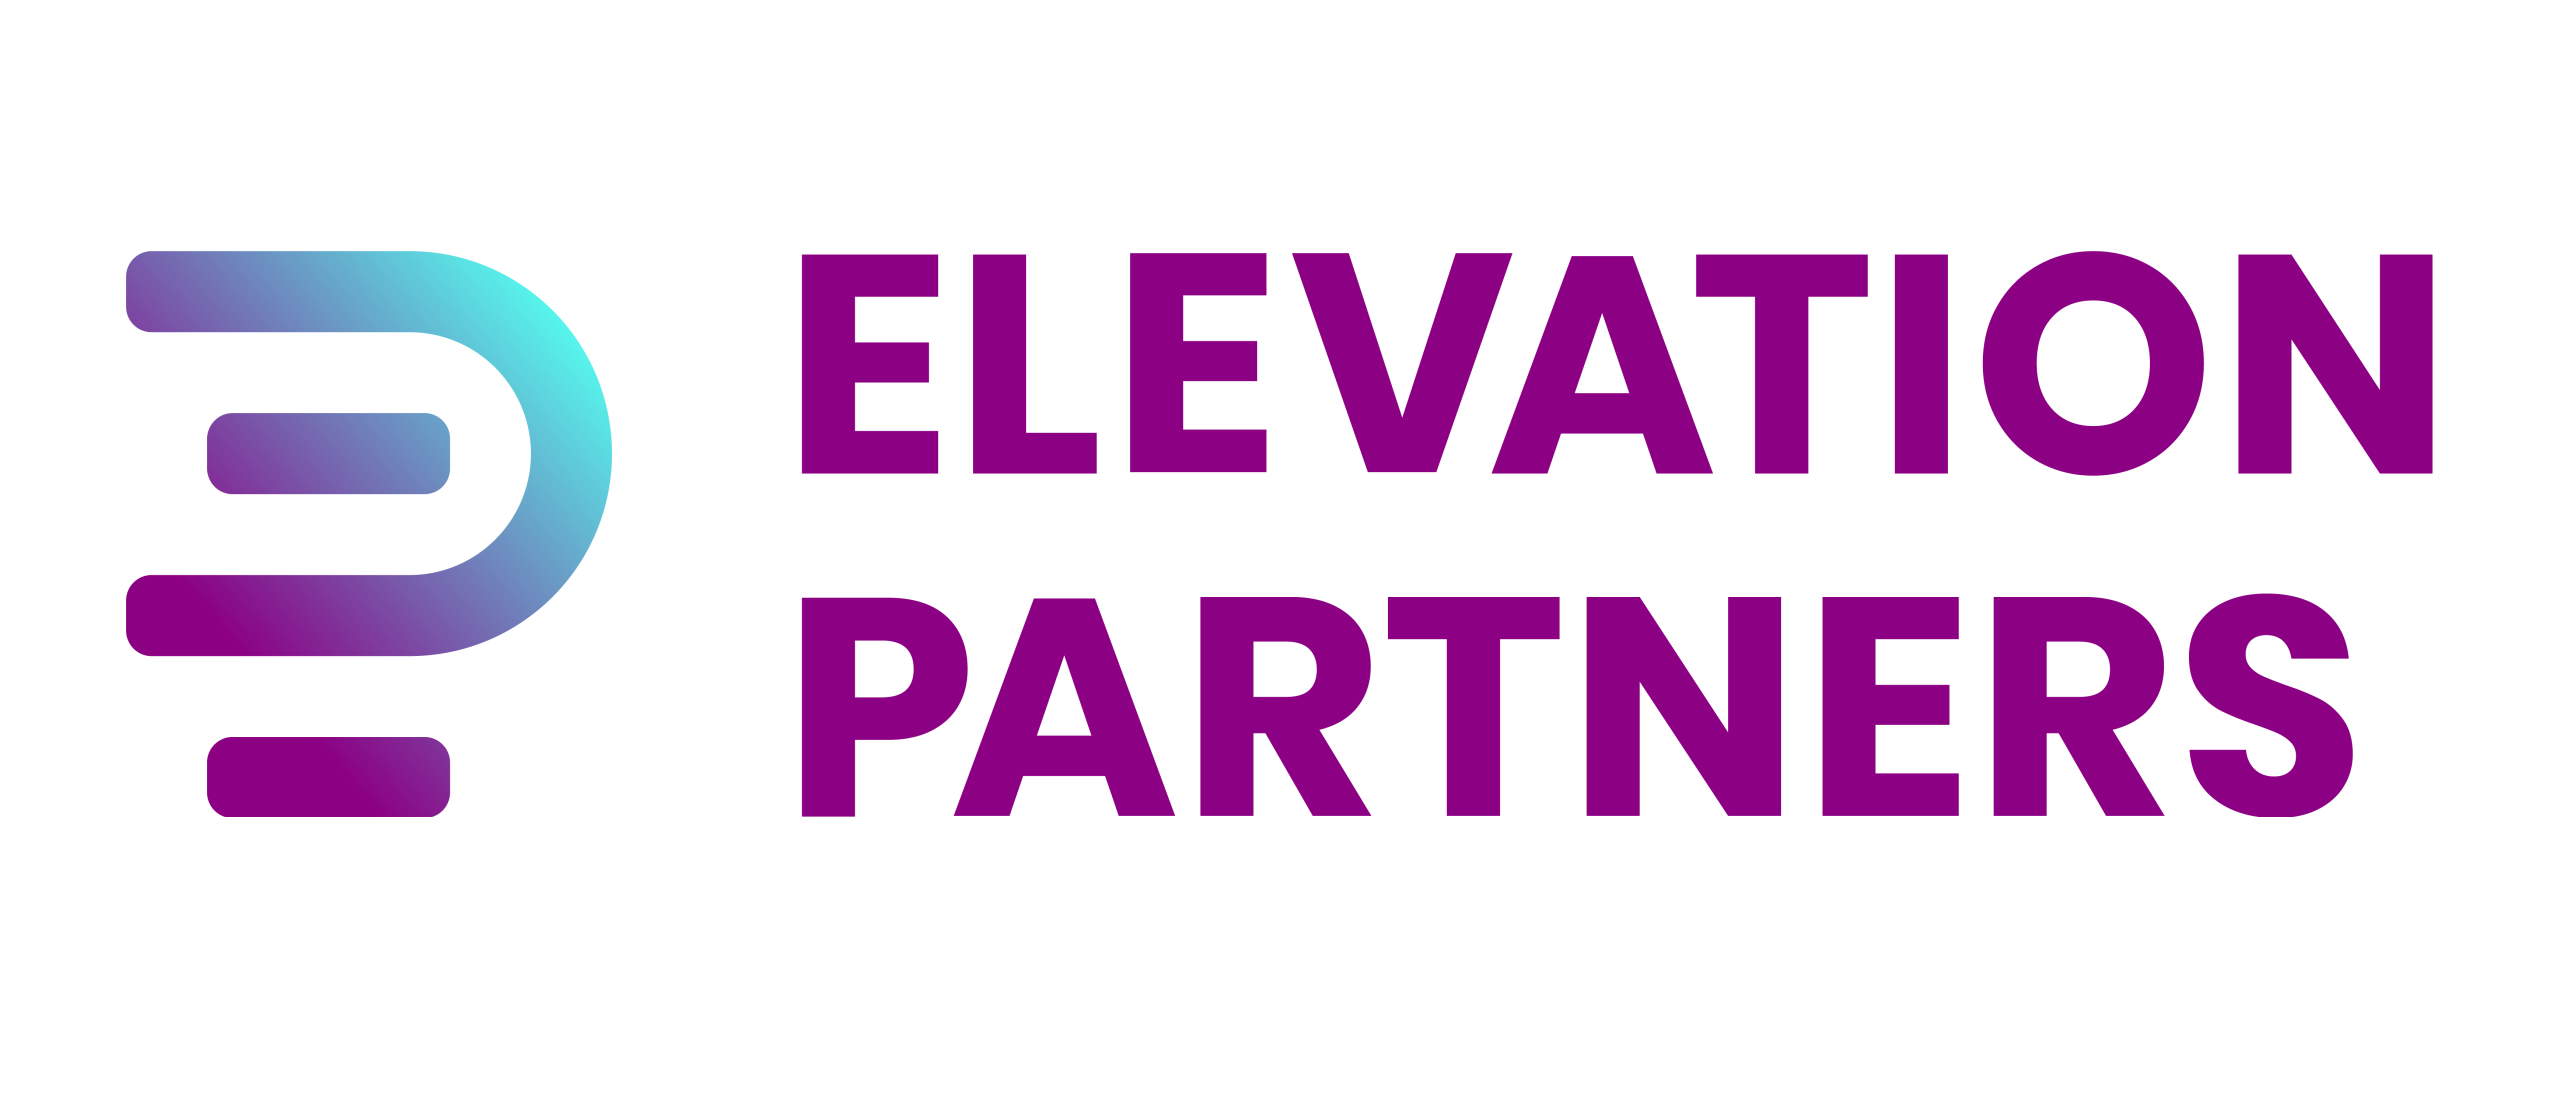 Elevation Partners klantenservice verbeteren